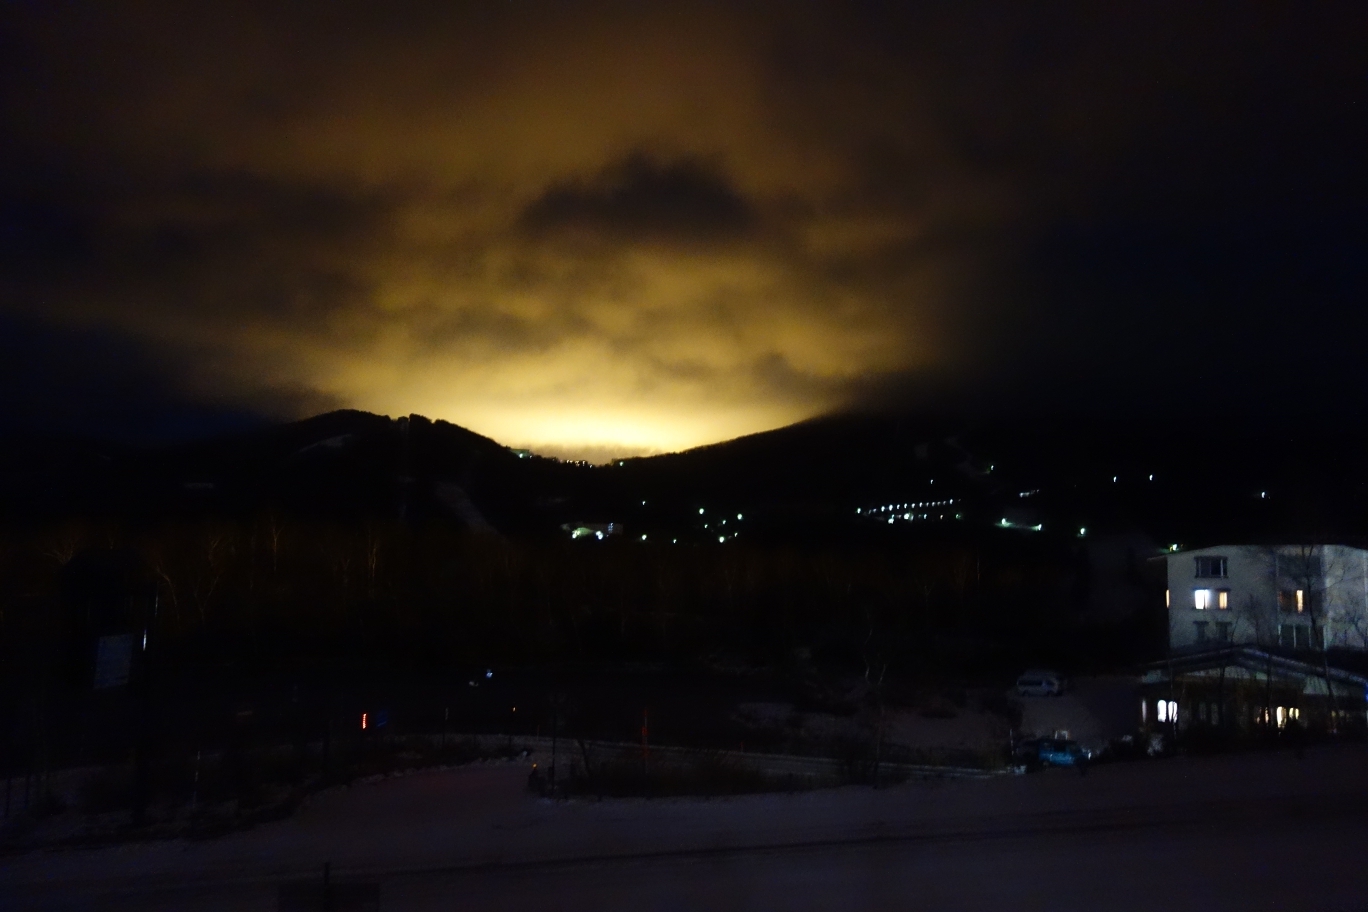 事務所から高天ヶ原方面を望む。スキー場整備のための照明が雲に反射している。